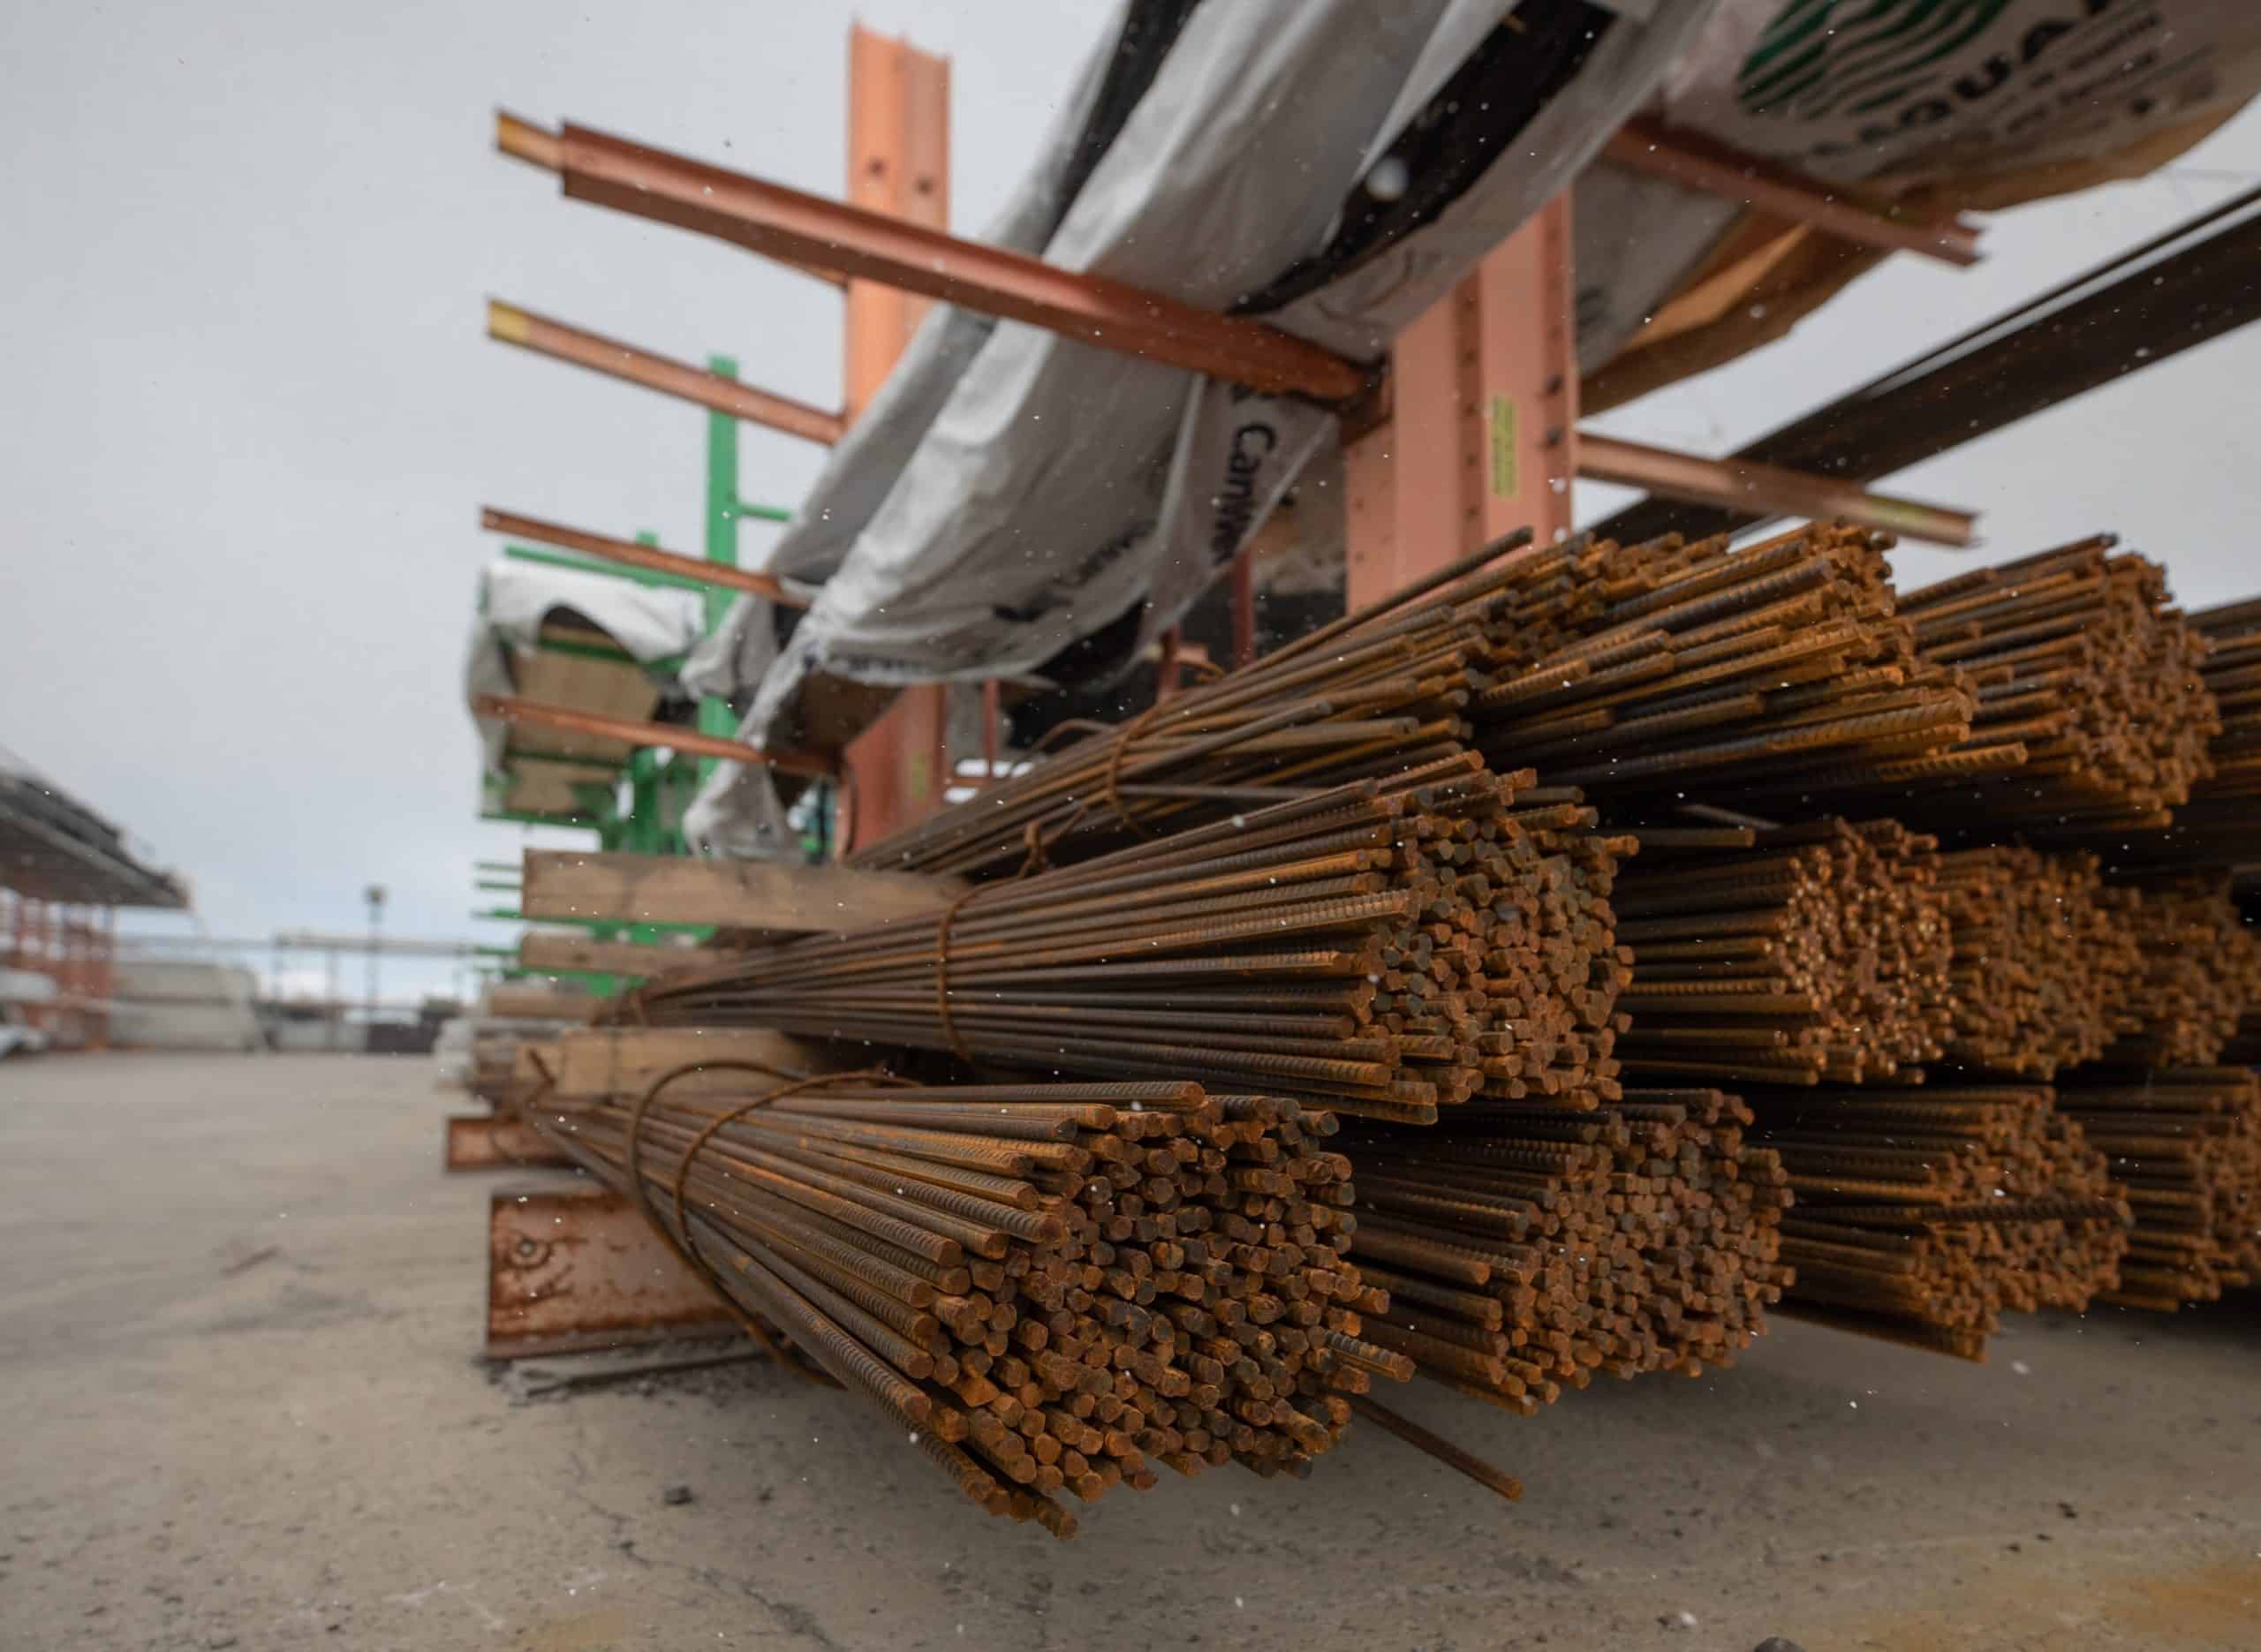 Bundles of building materials in Toronto